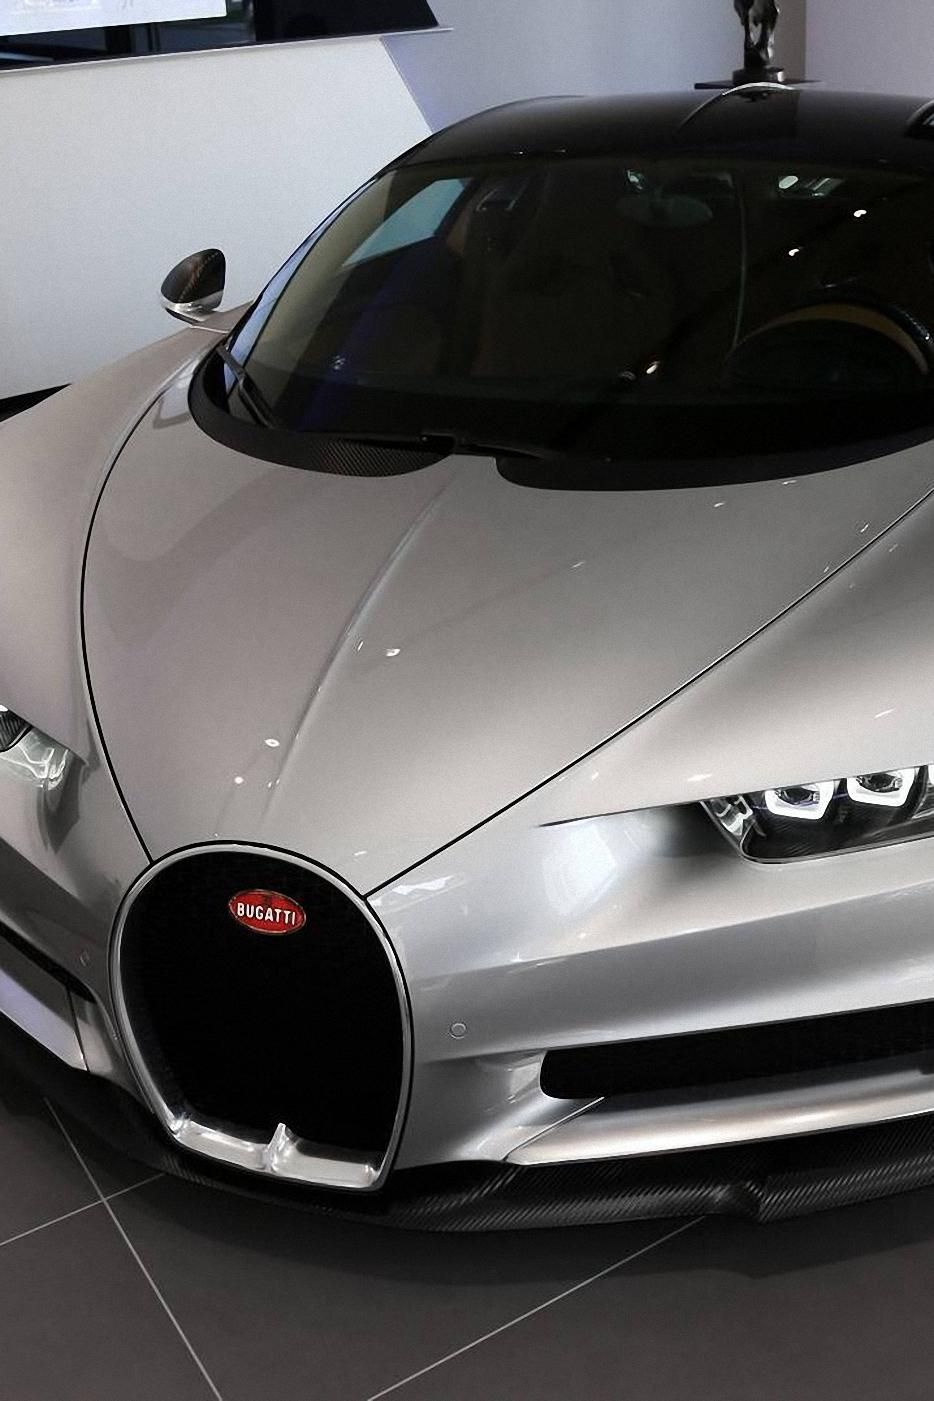 تصویر زمینه جدید ماشین بوگاتی یا Bugatti به رنگ نقره ای شاین